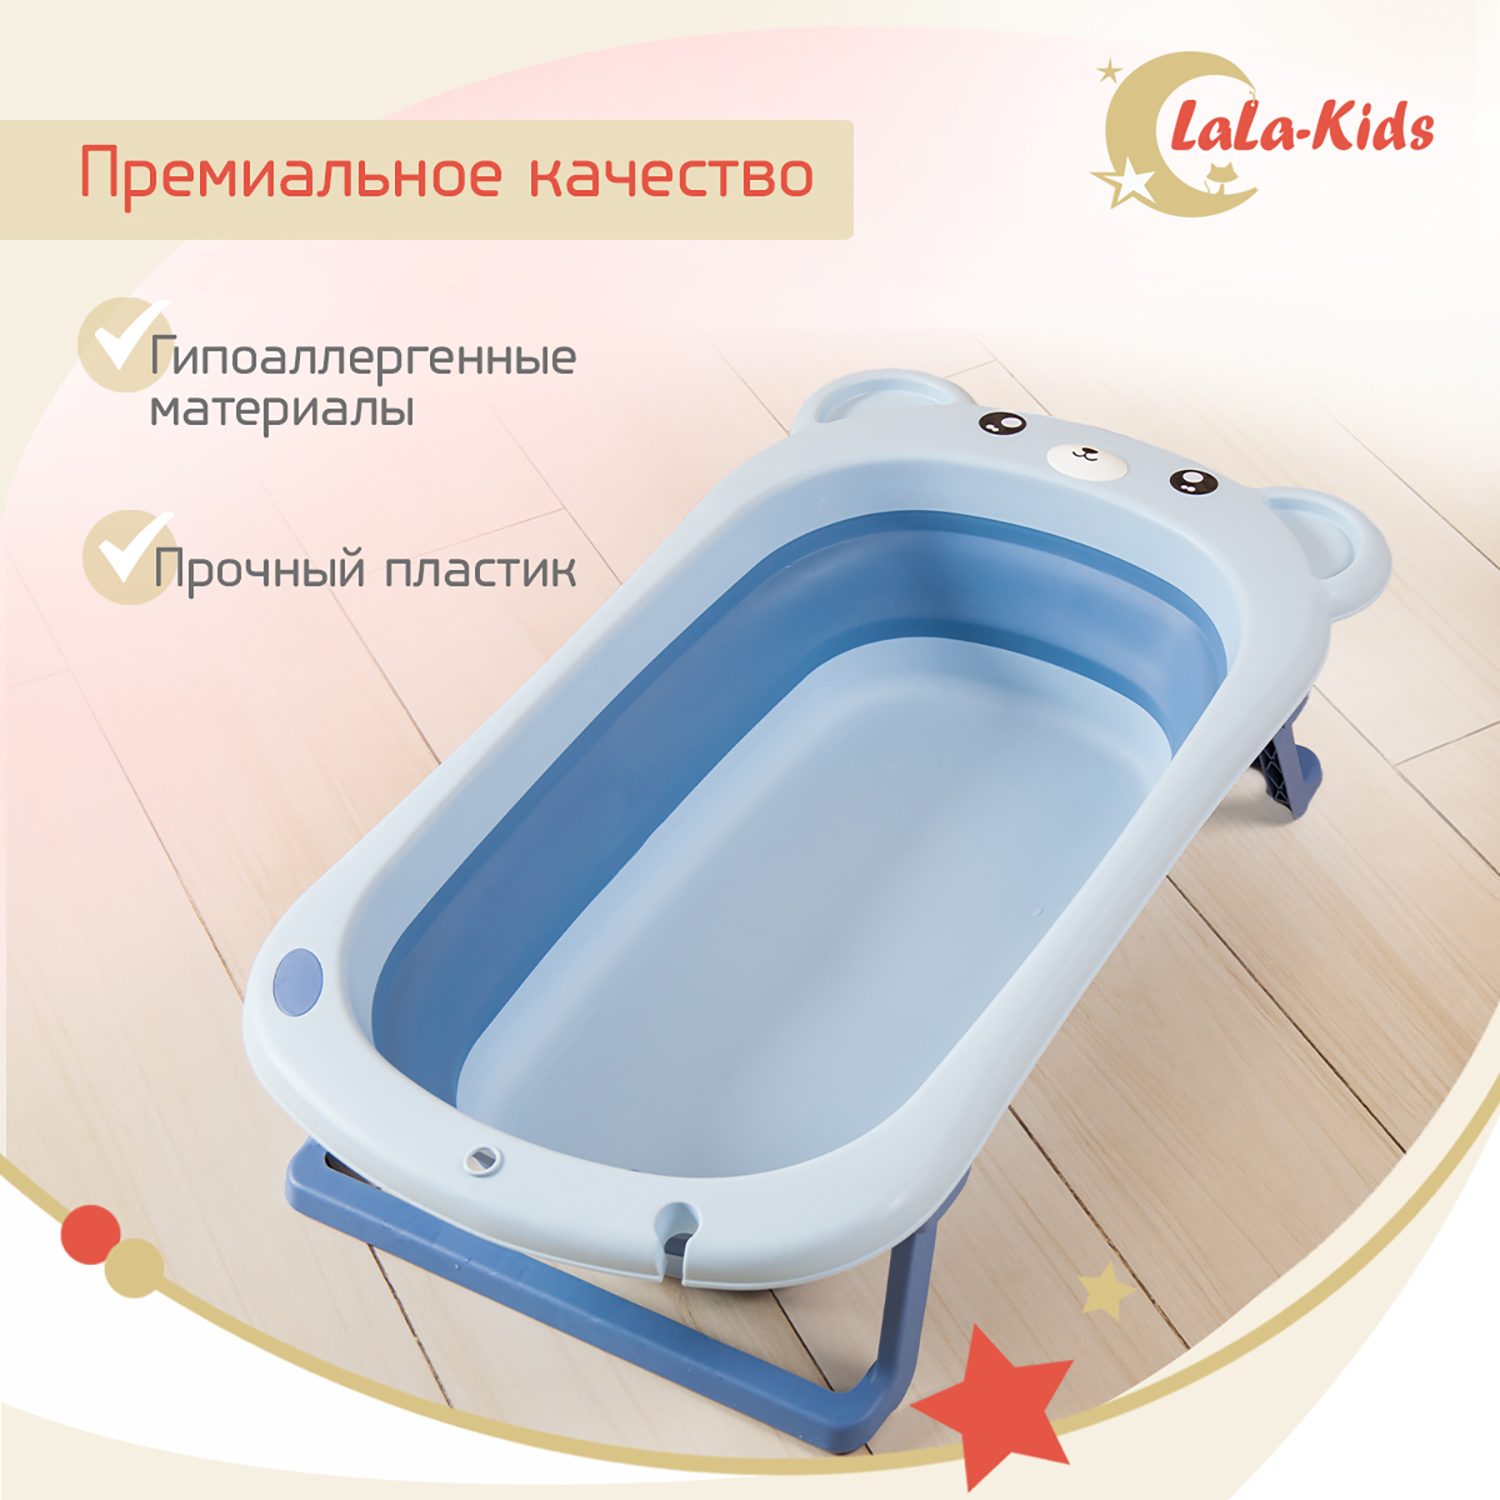 Ванночка для новорожденных LaLa-Kids складная с матрасиком ярко-синим в комплекте - фото 9